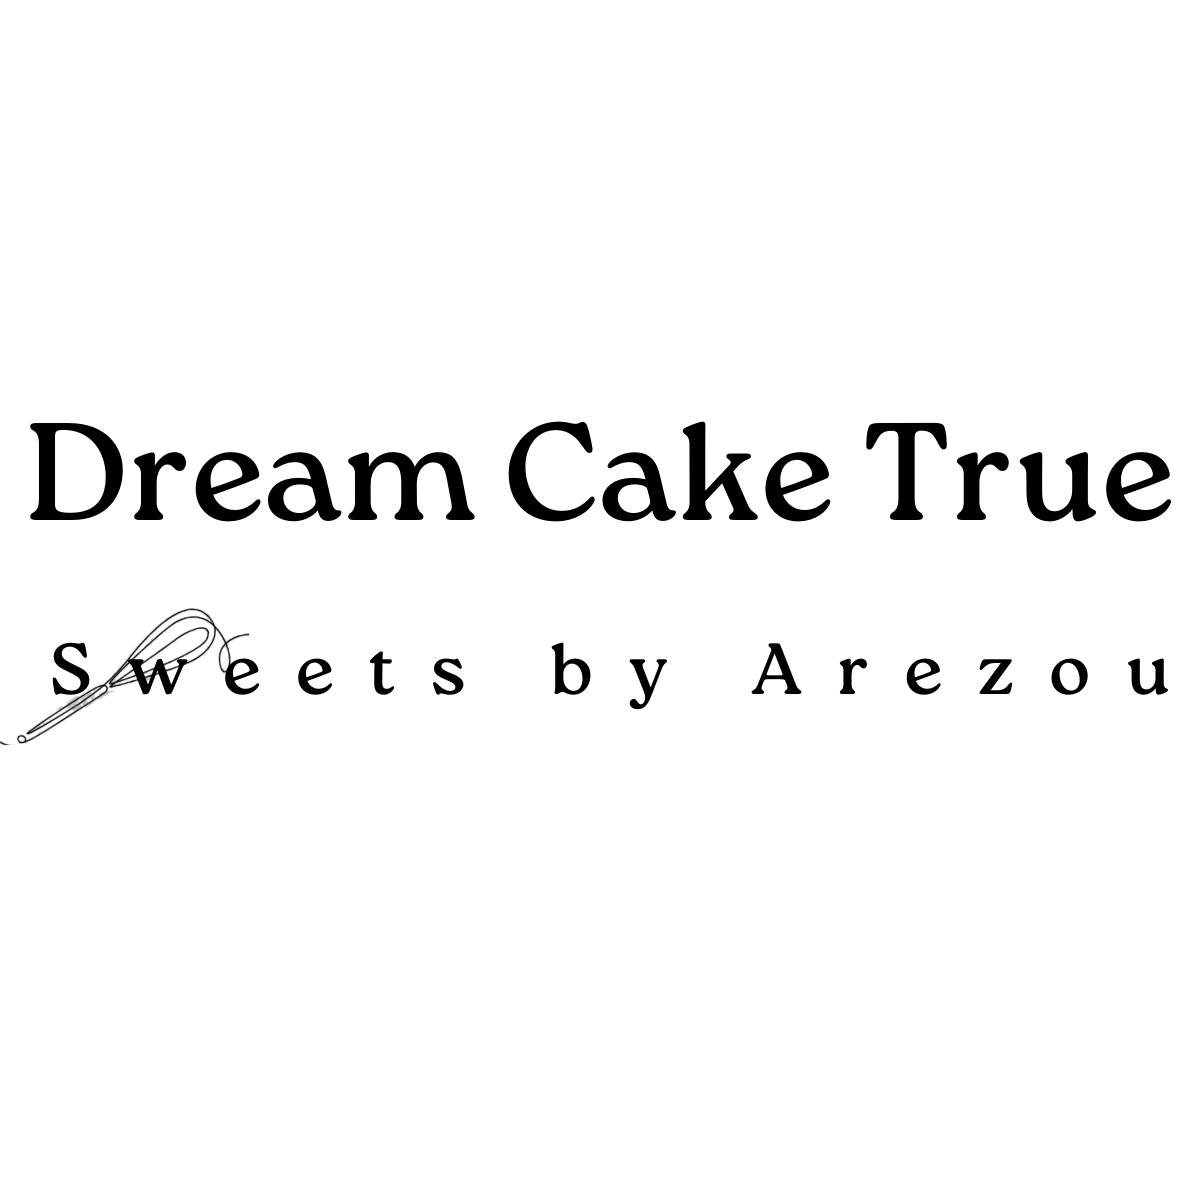 (c) Dreamcaketrue.com